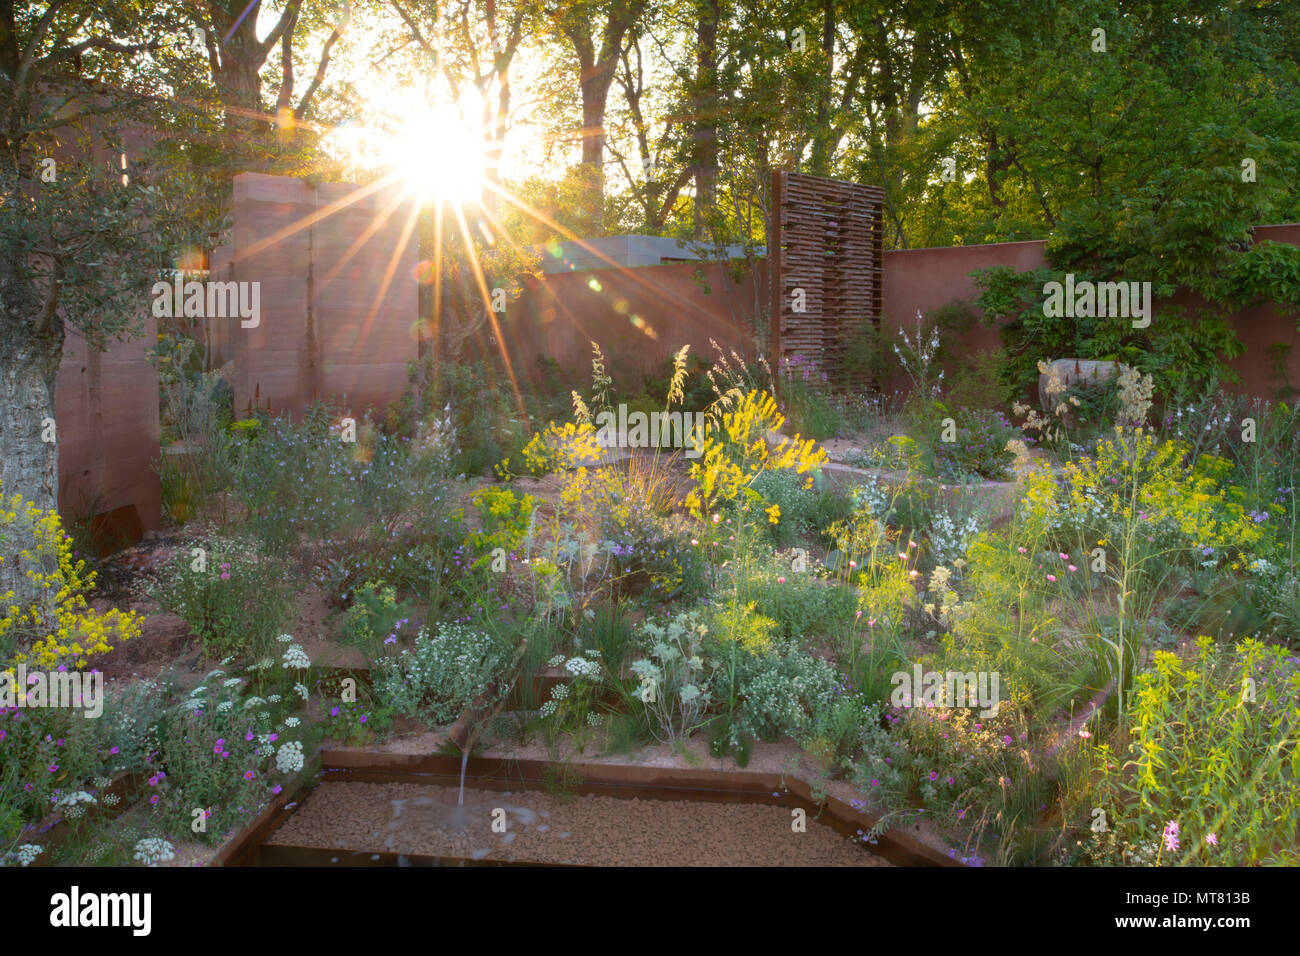 Sonnenaufgang hinter dem M&G Garten von Sarah Preis an der RHS Chelsea Flower Show 2018, London, UK konzipiert Stockfoto